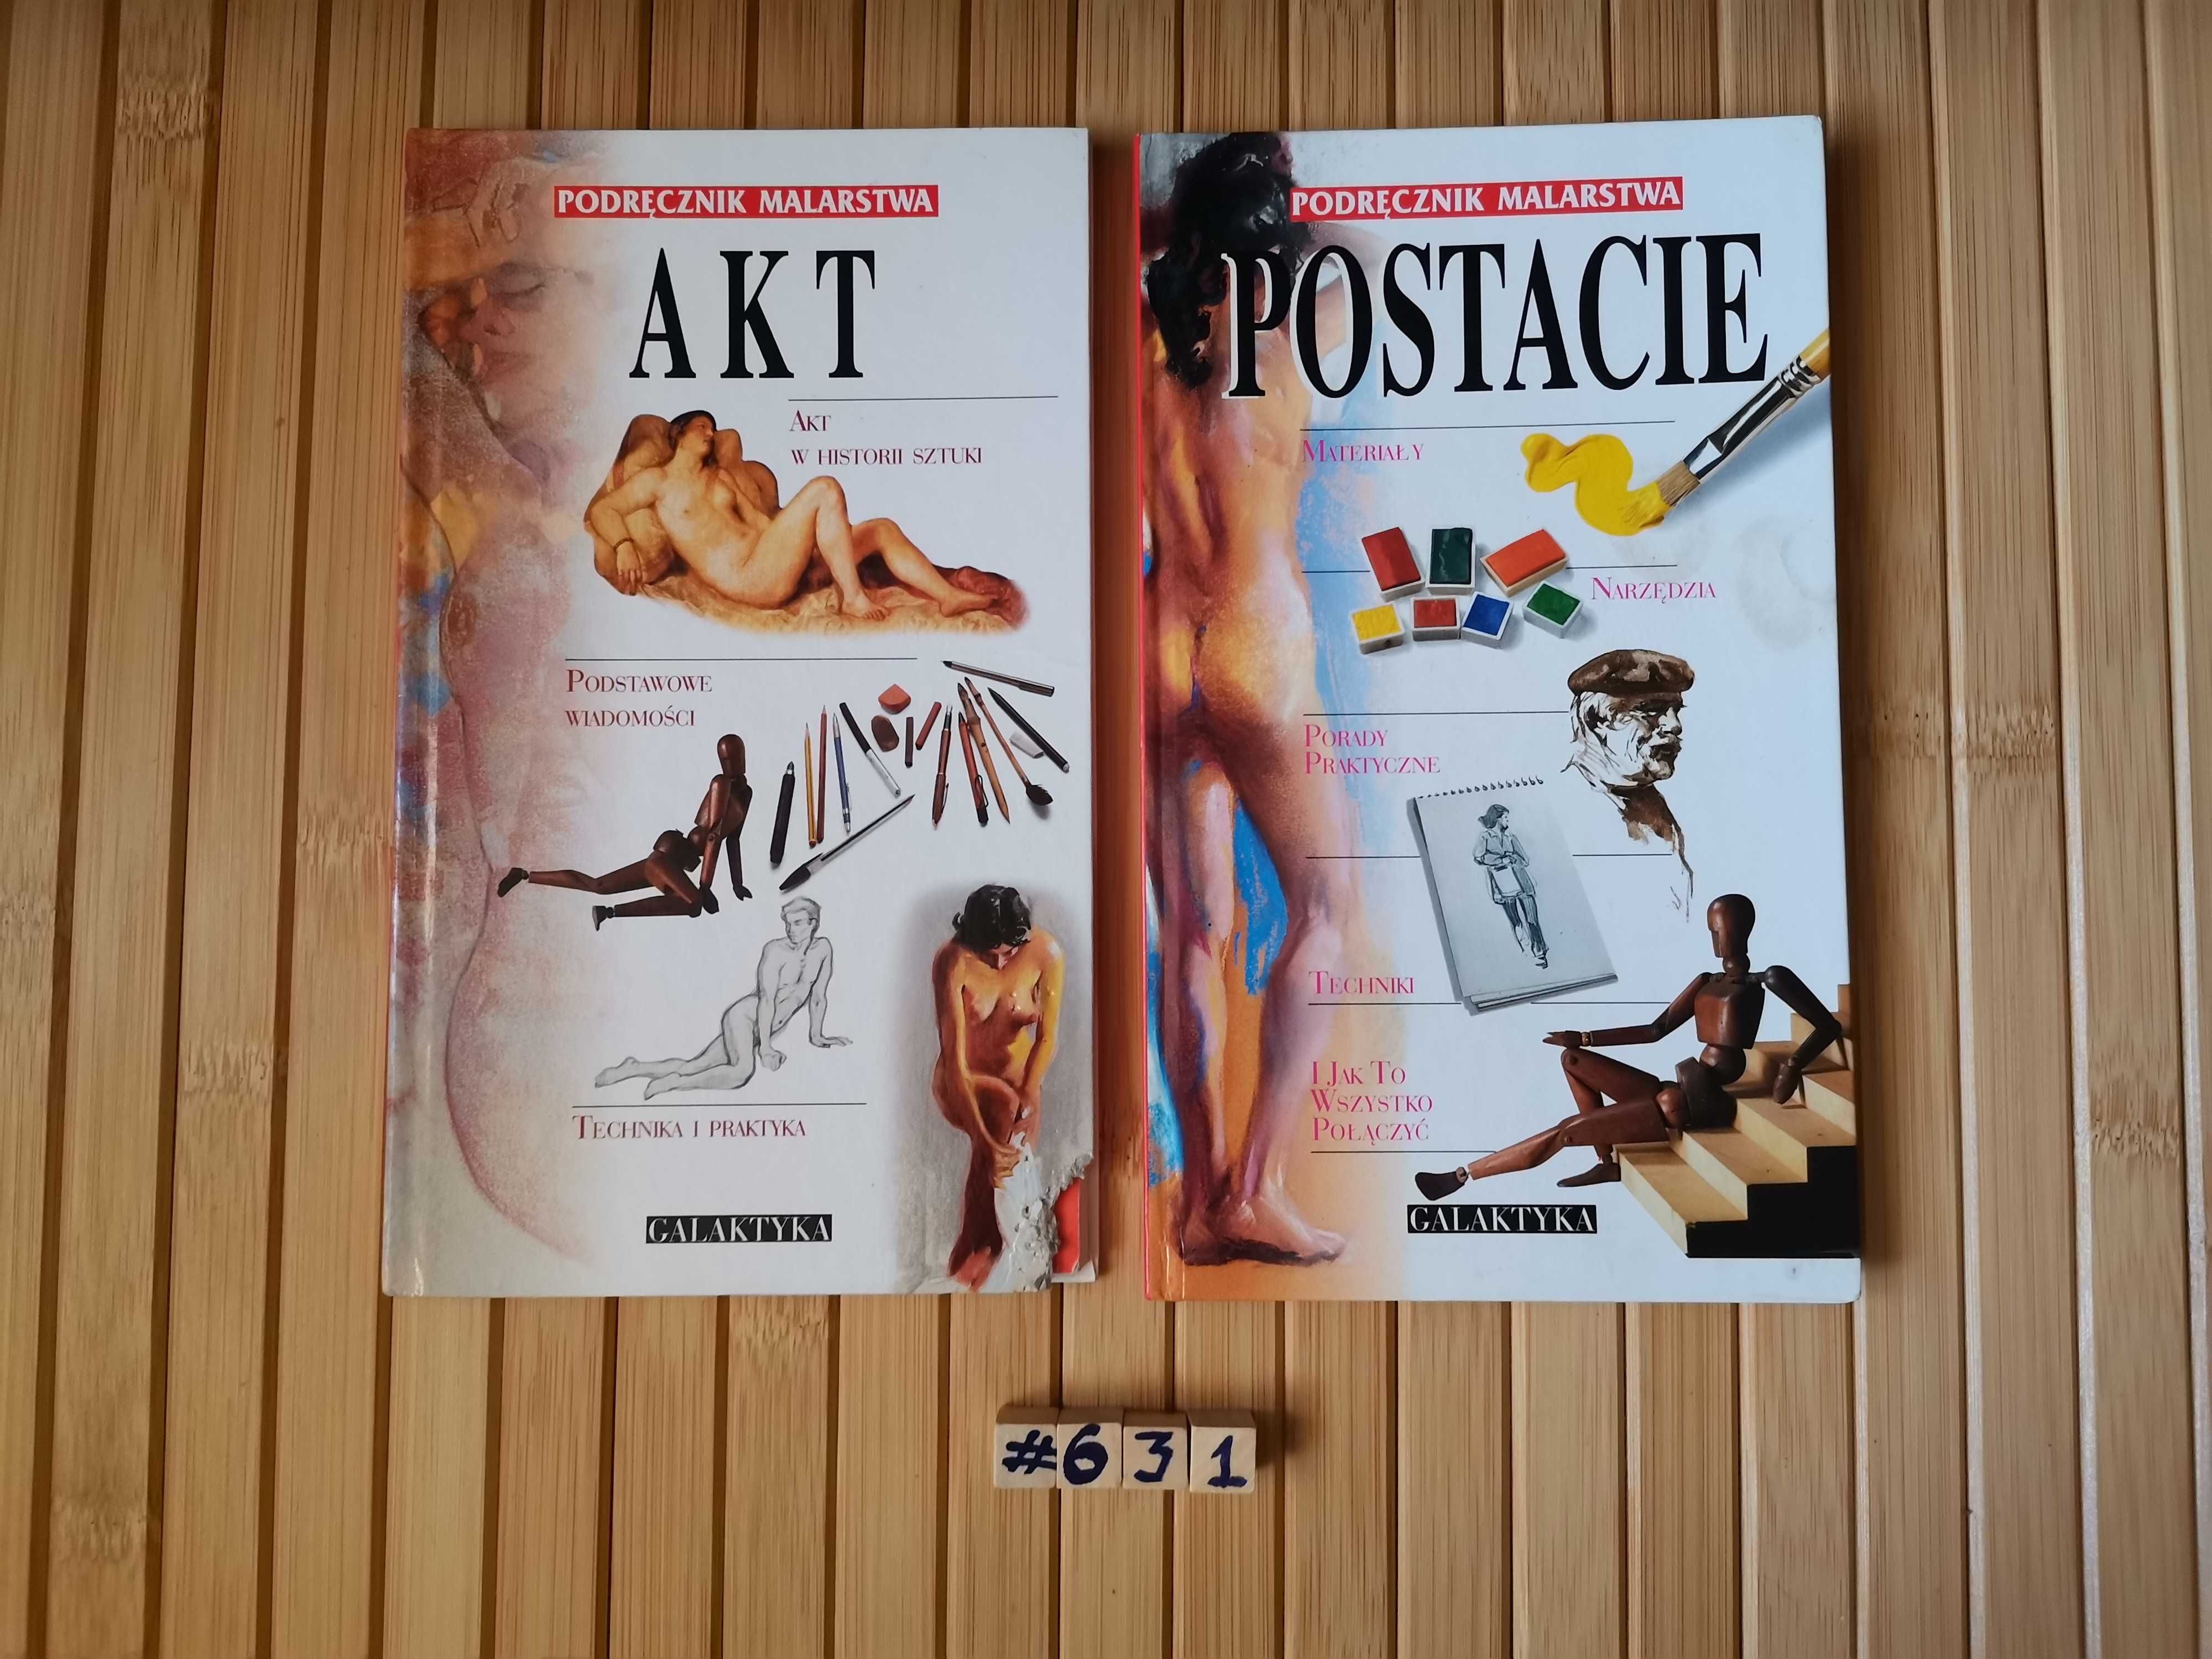 Podręcznik malarstwa. Akt, Postacie pakiet Real foty